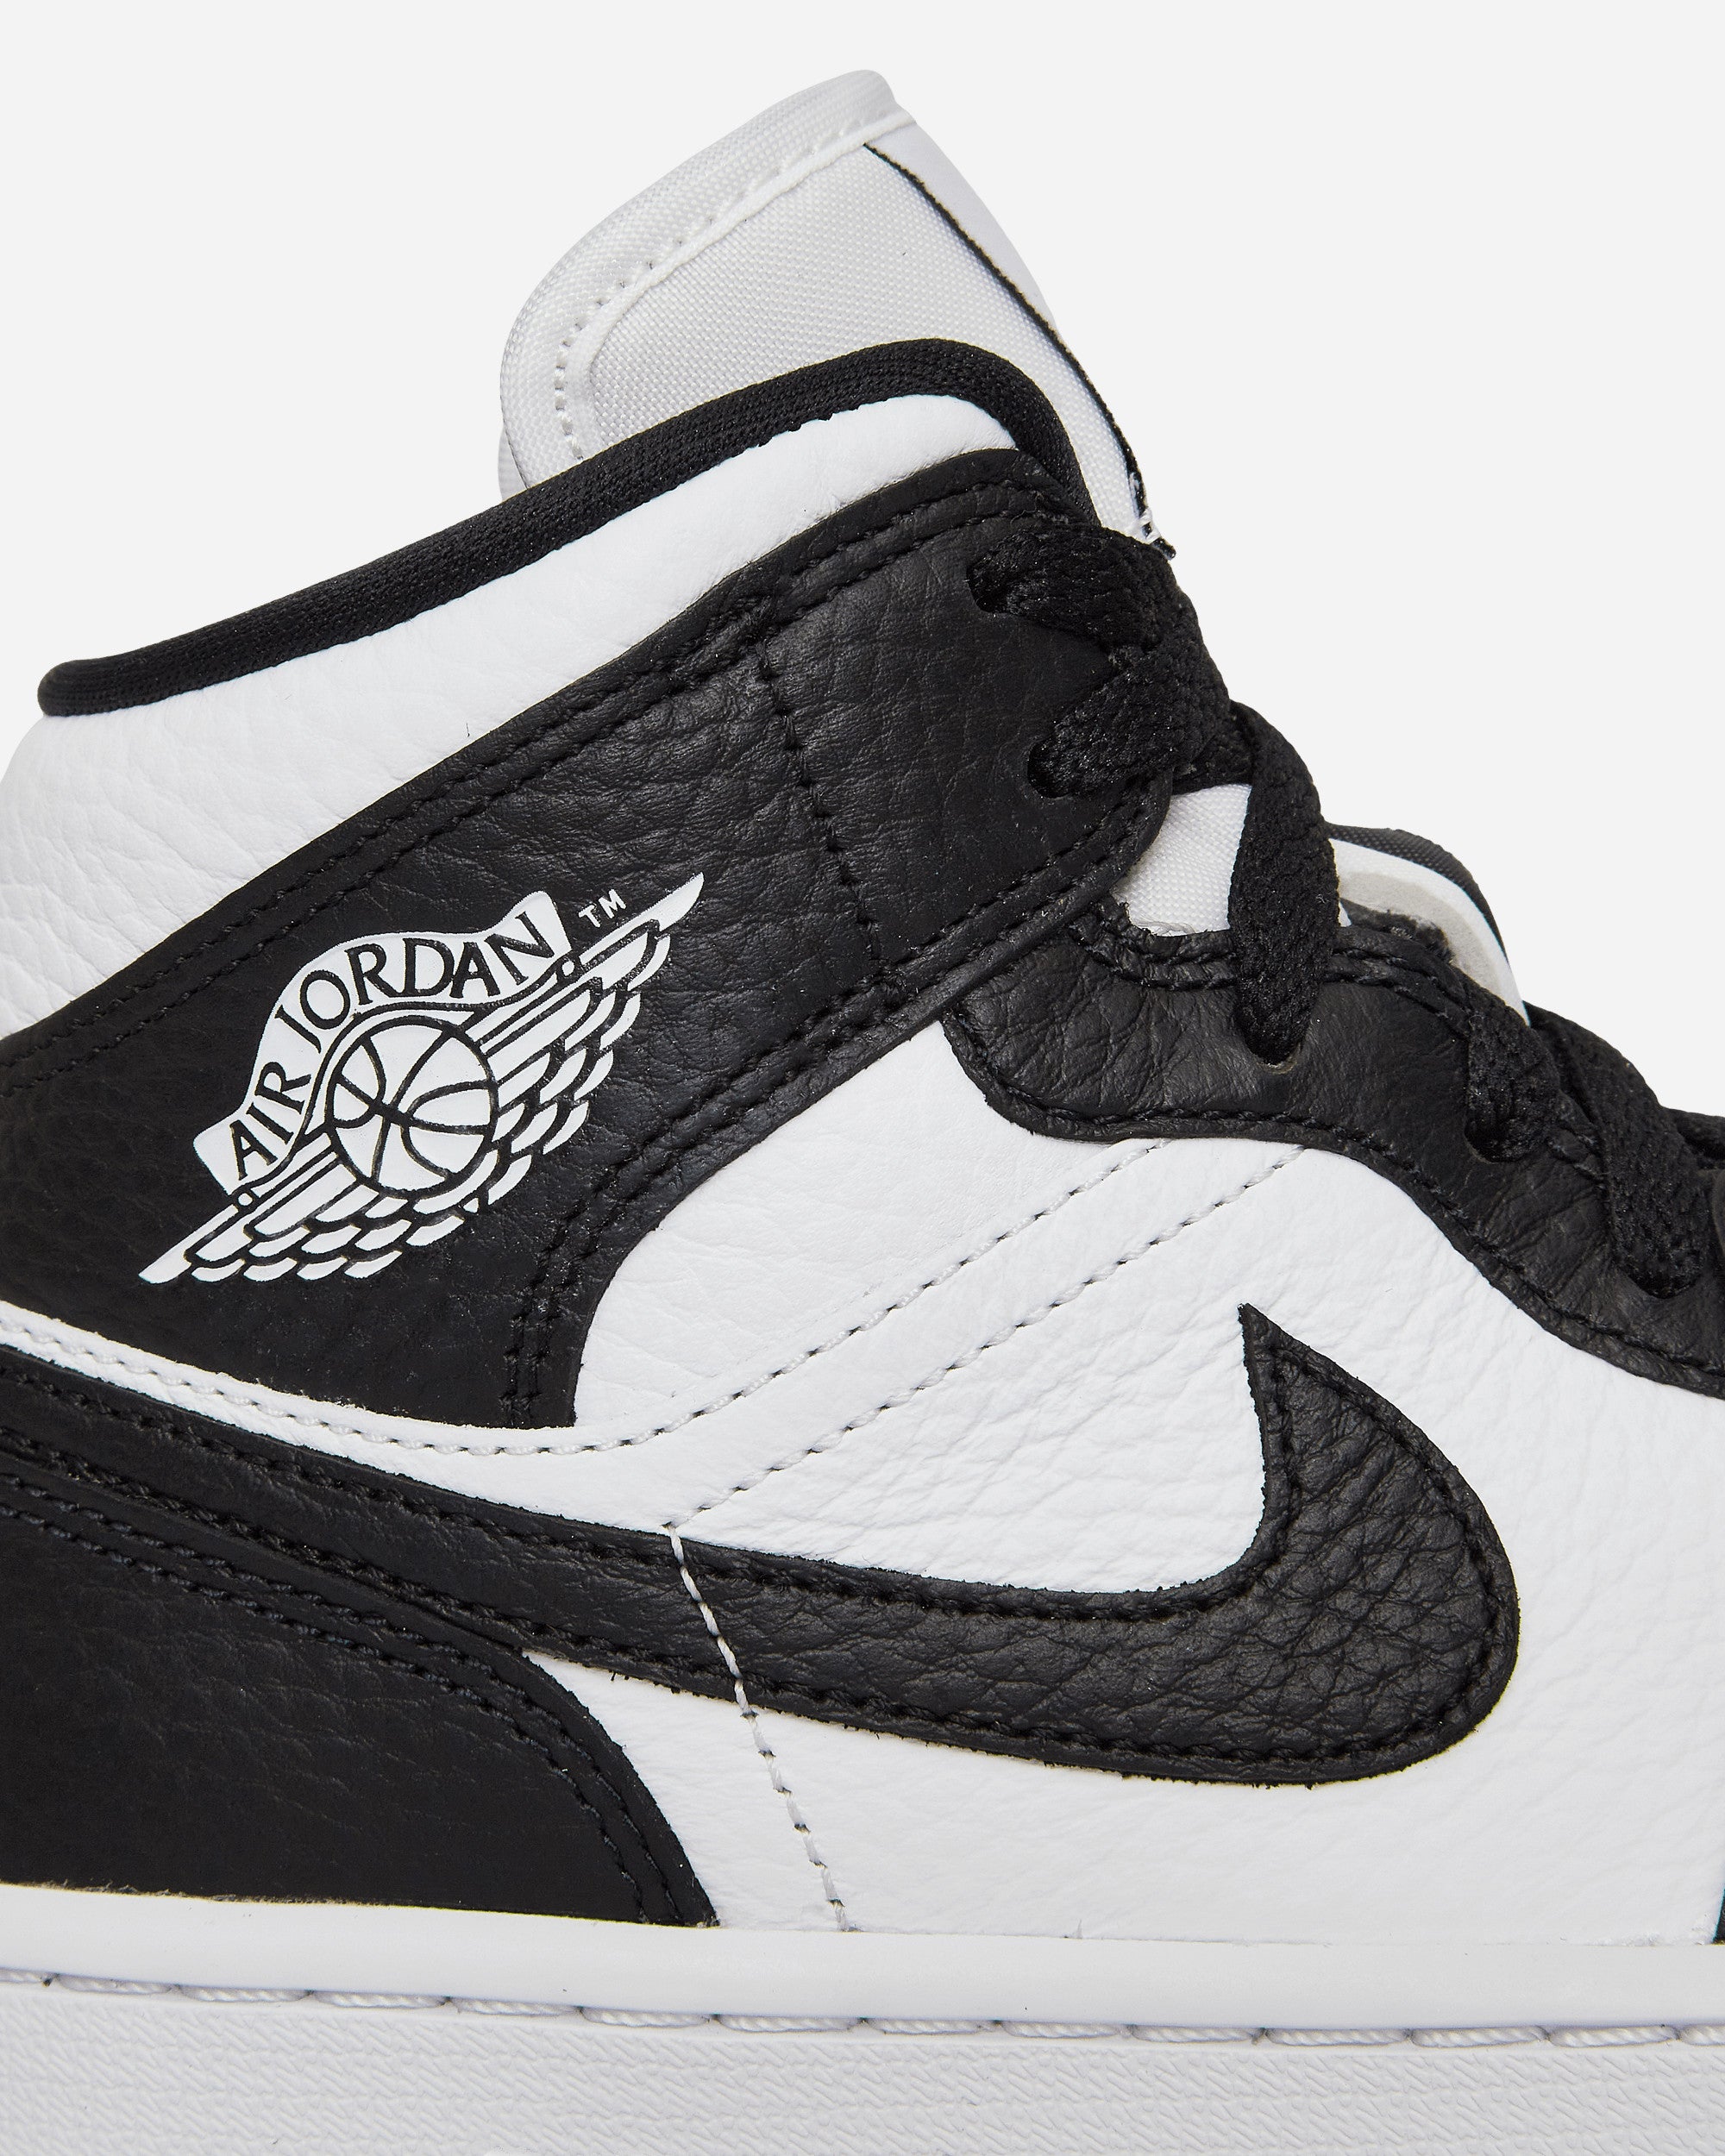 Nike Jordan Wmns Air Jordan 1 Mid Se White/Black-White Sneakers Mid DR0501-101